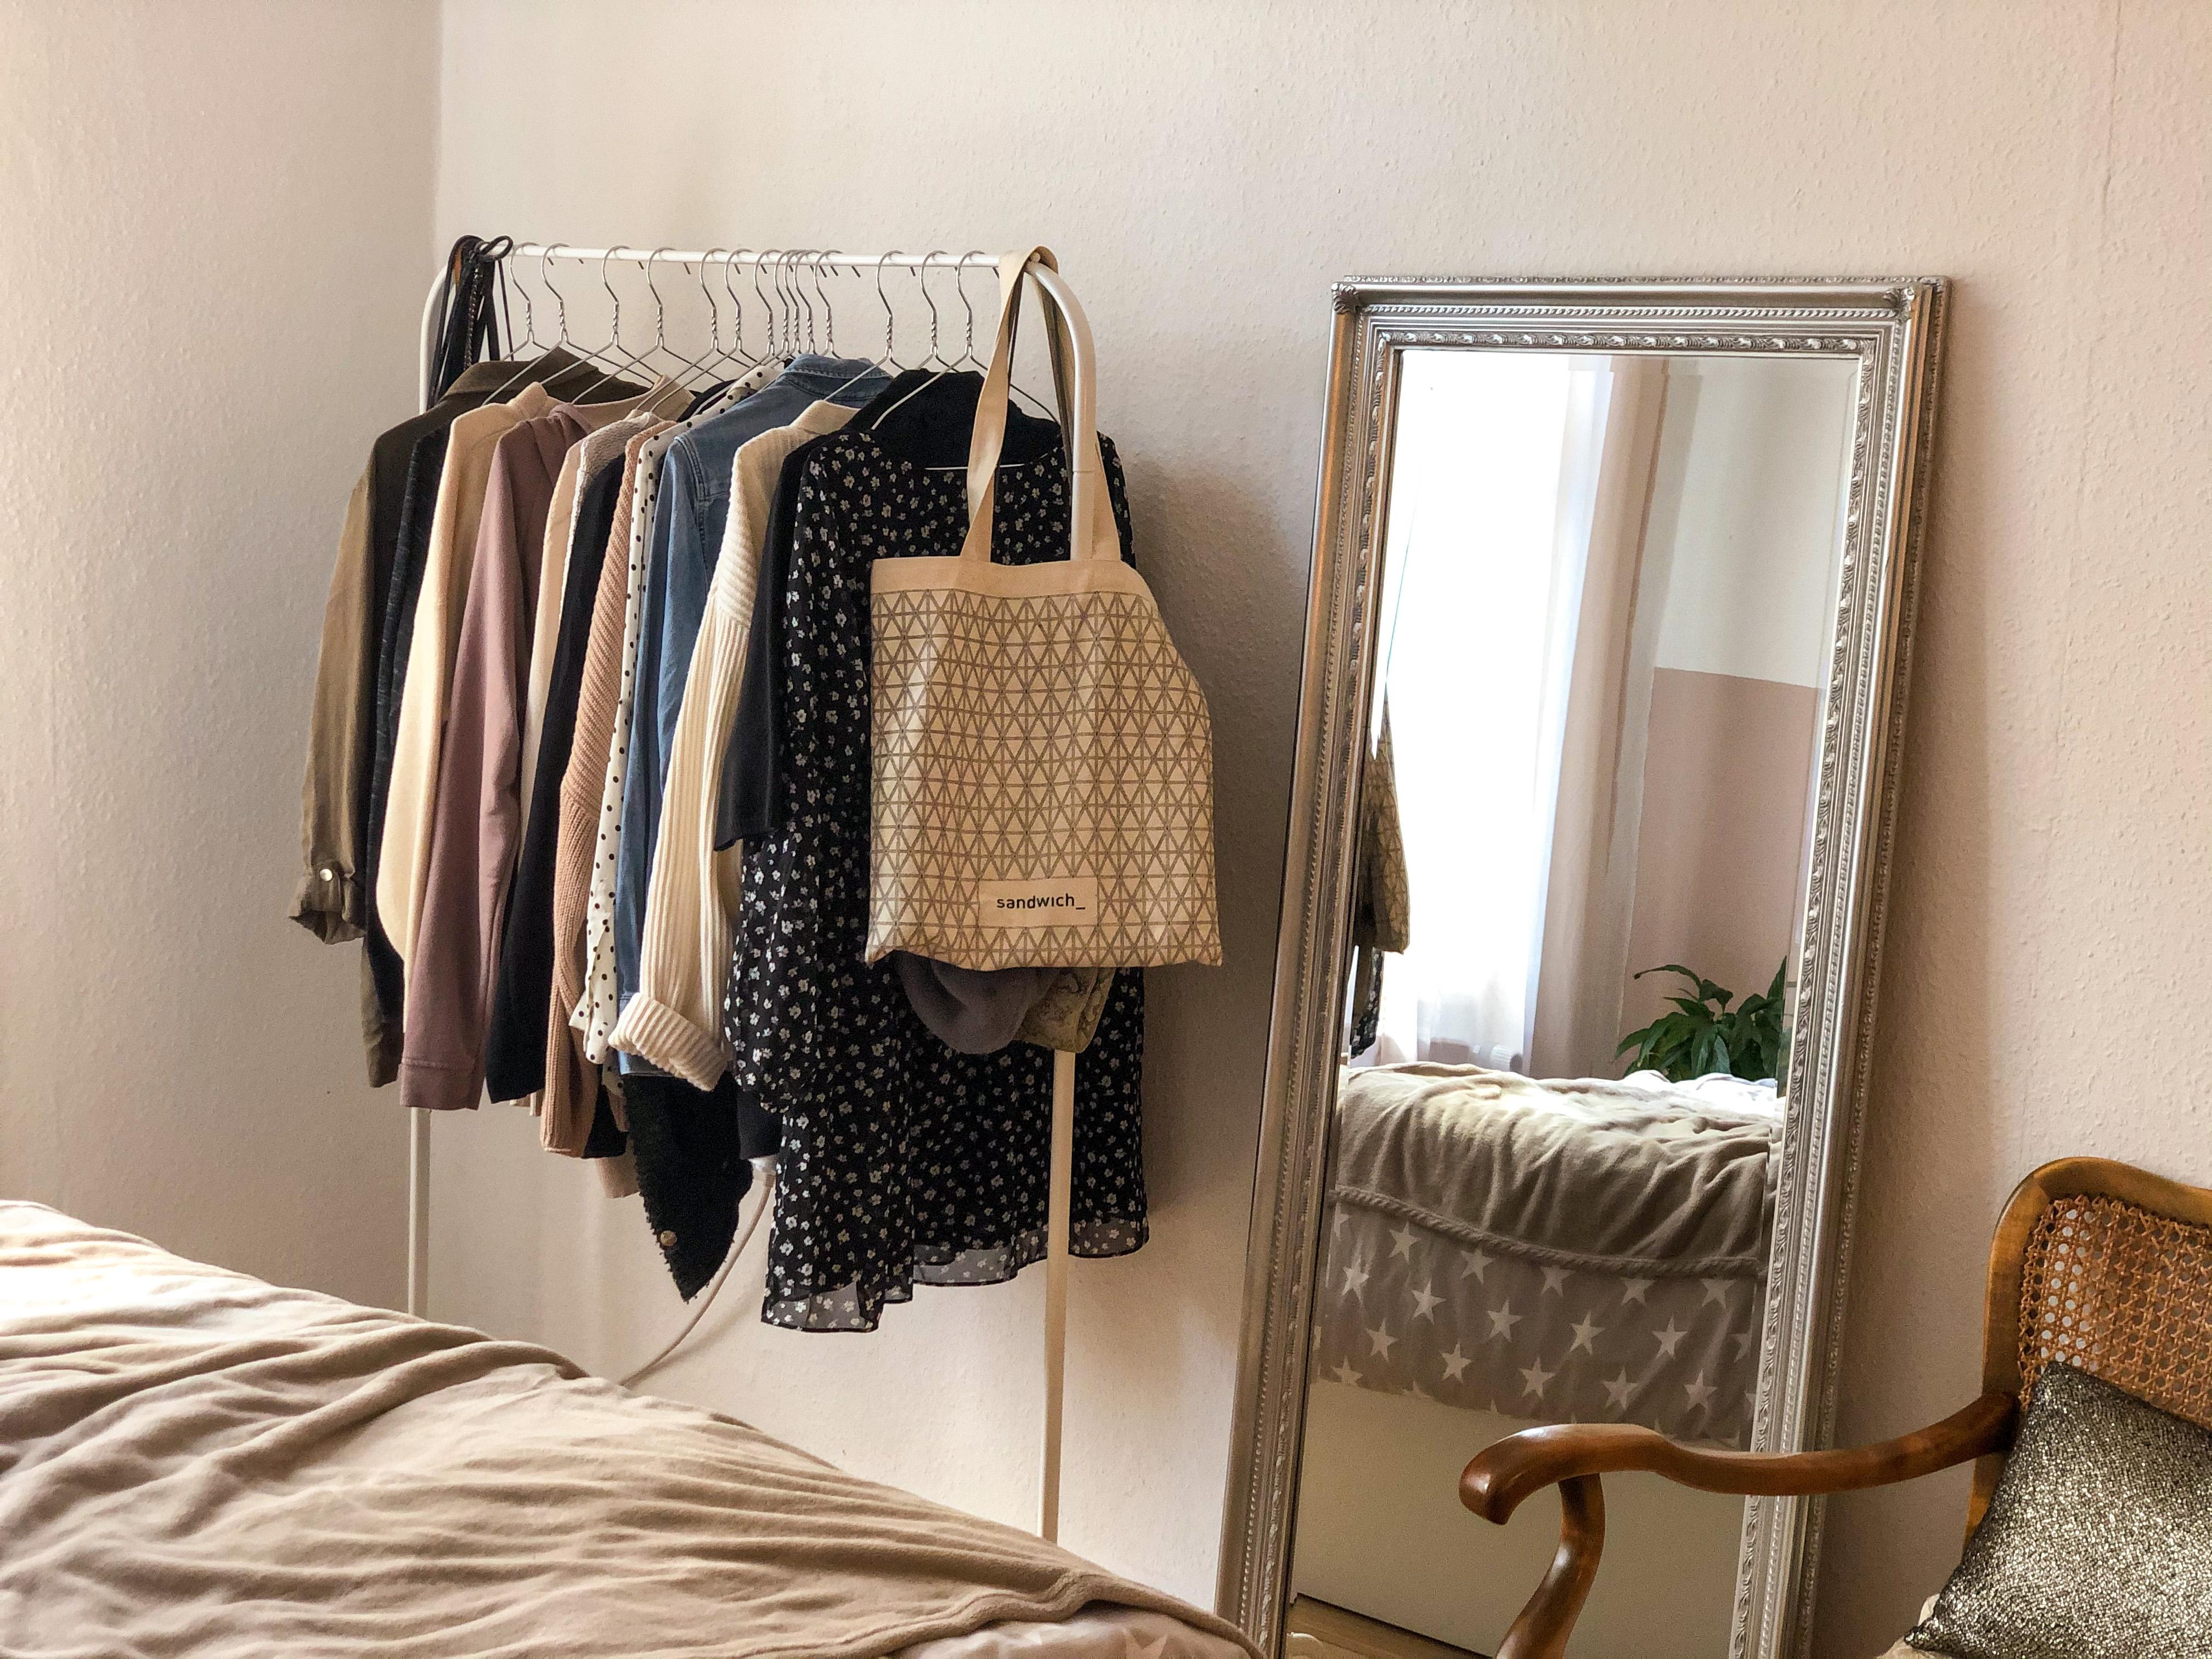 Mix aus neu und alt ✨
#kleiderstange #mirror #bedroom